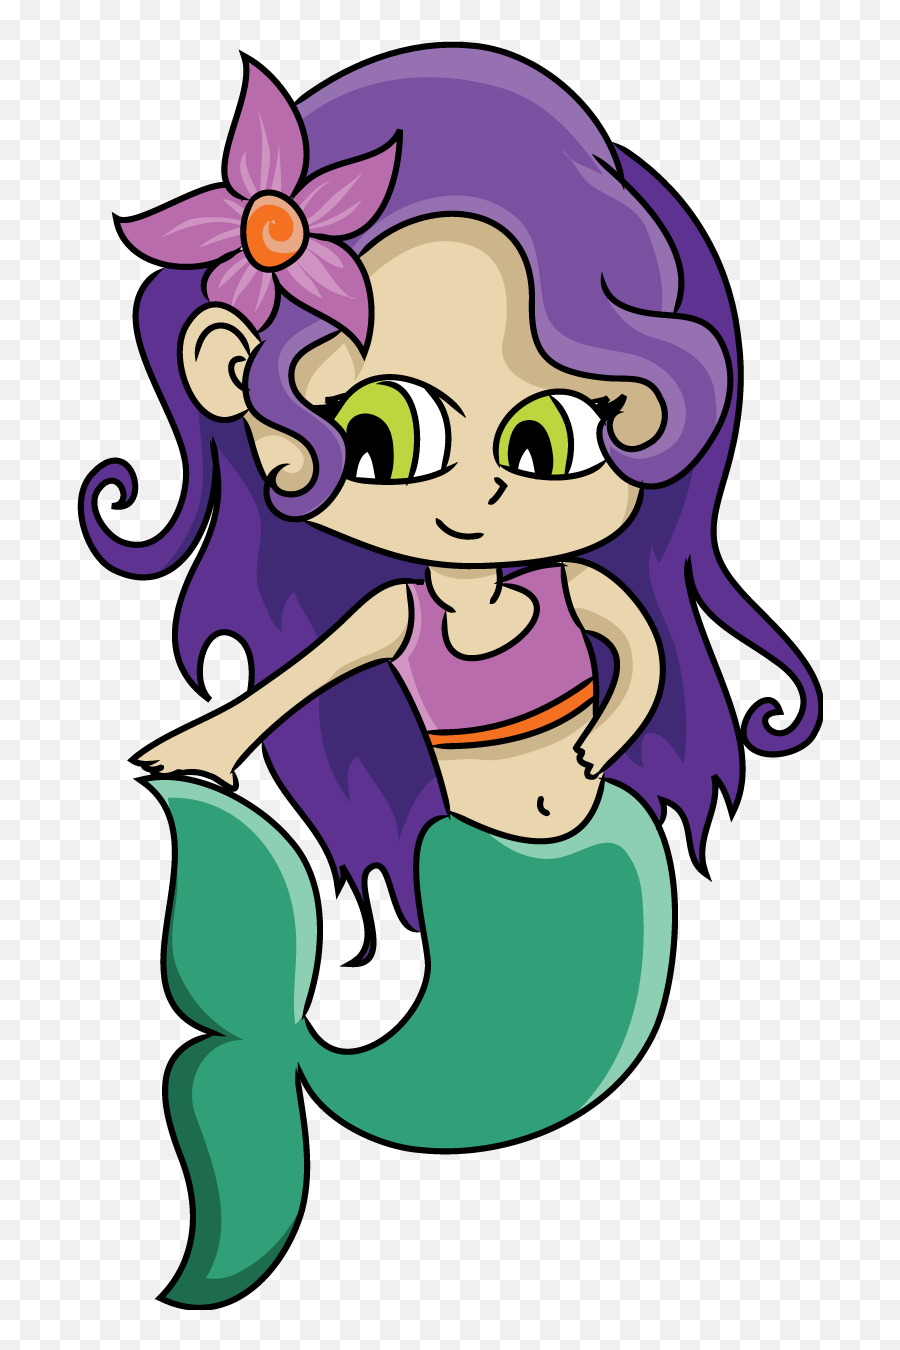 Mermaid Free To Use Cliparts In 2020 - Under The Sea Mermaid Cartoon Emoji,Is There A Mermaid Emoji